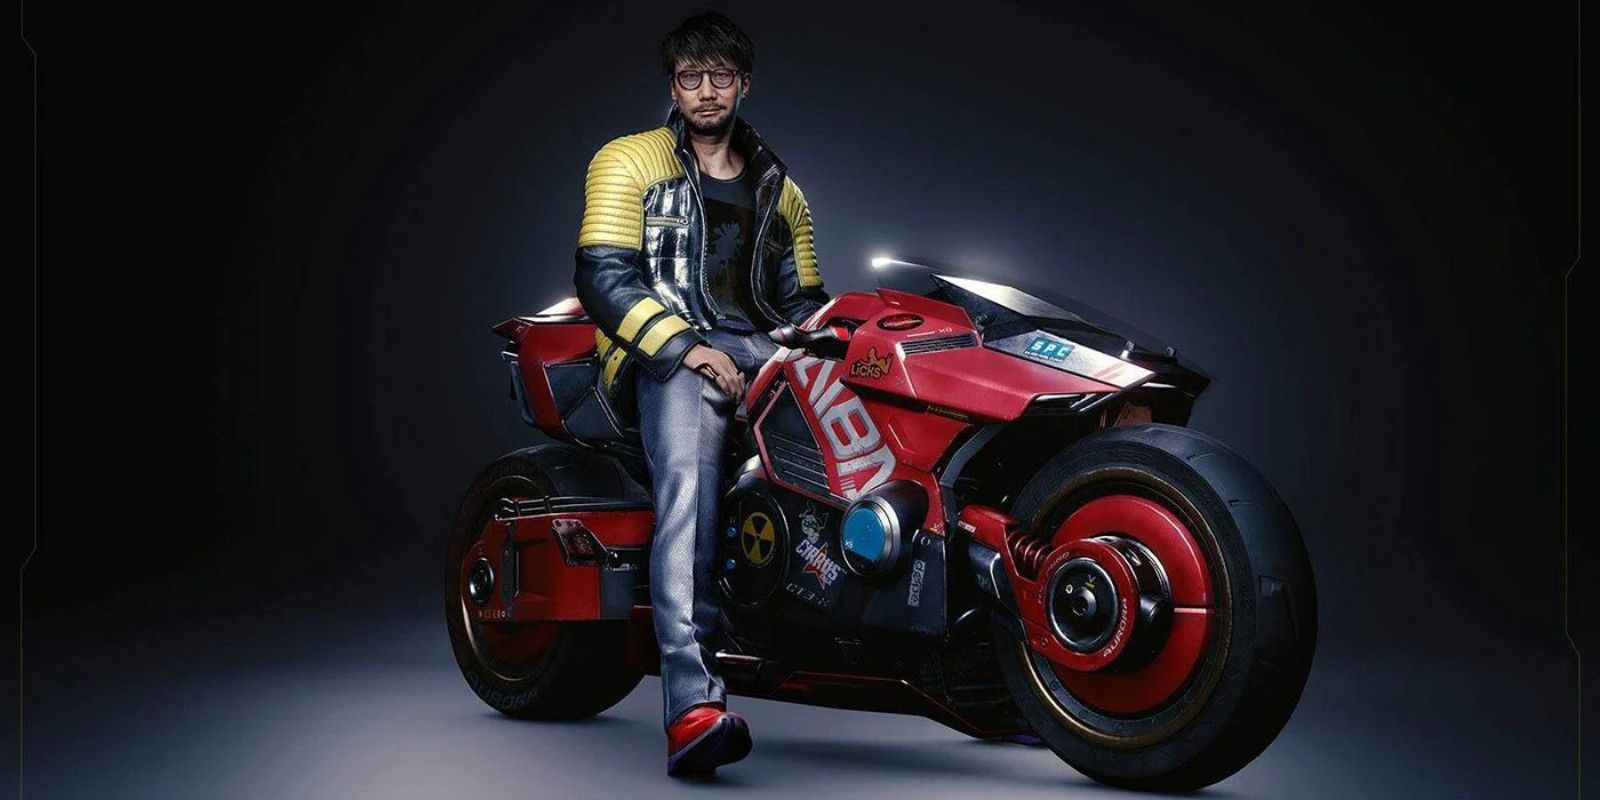 Cyberpunk 2077 - Hideo Kojima Motorcycle